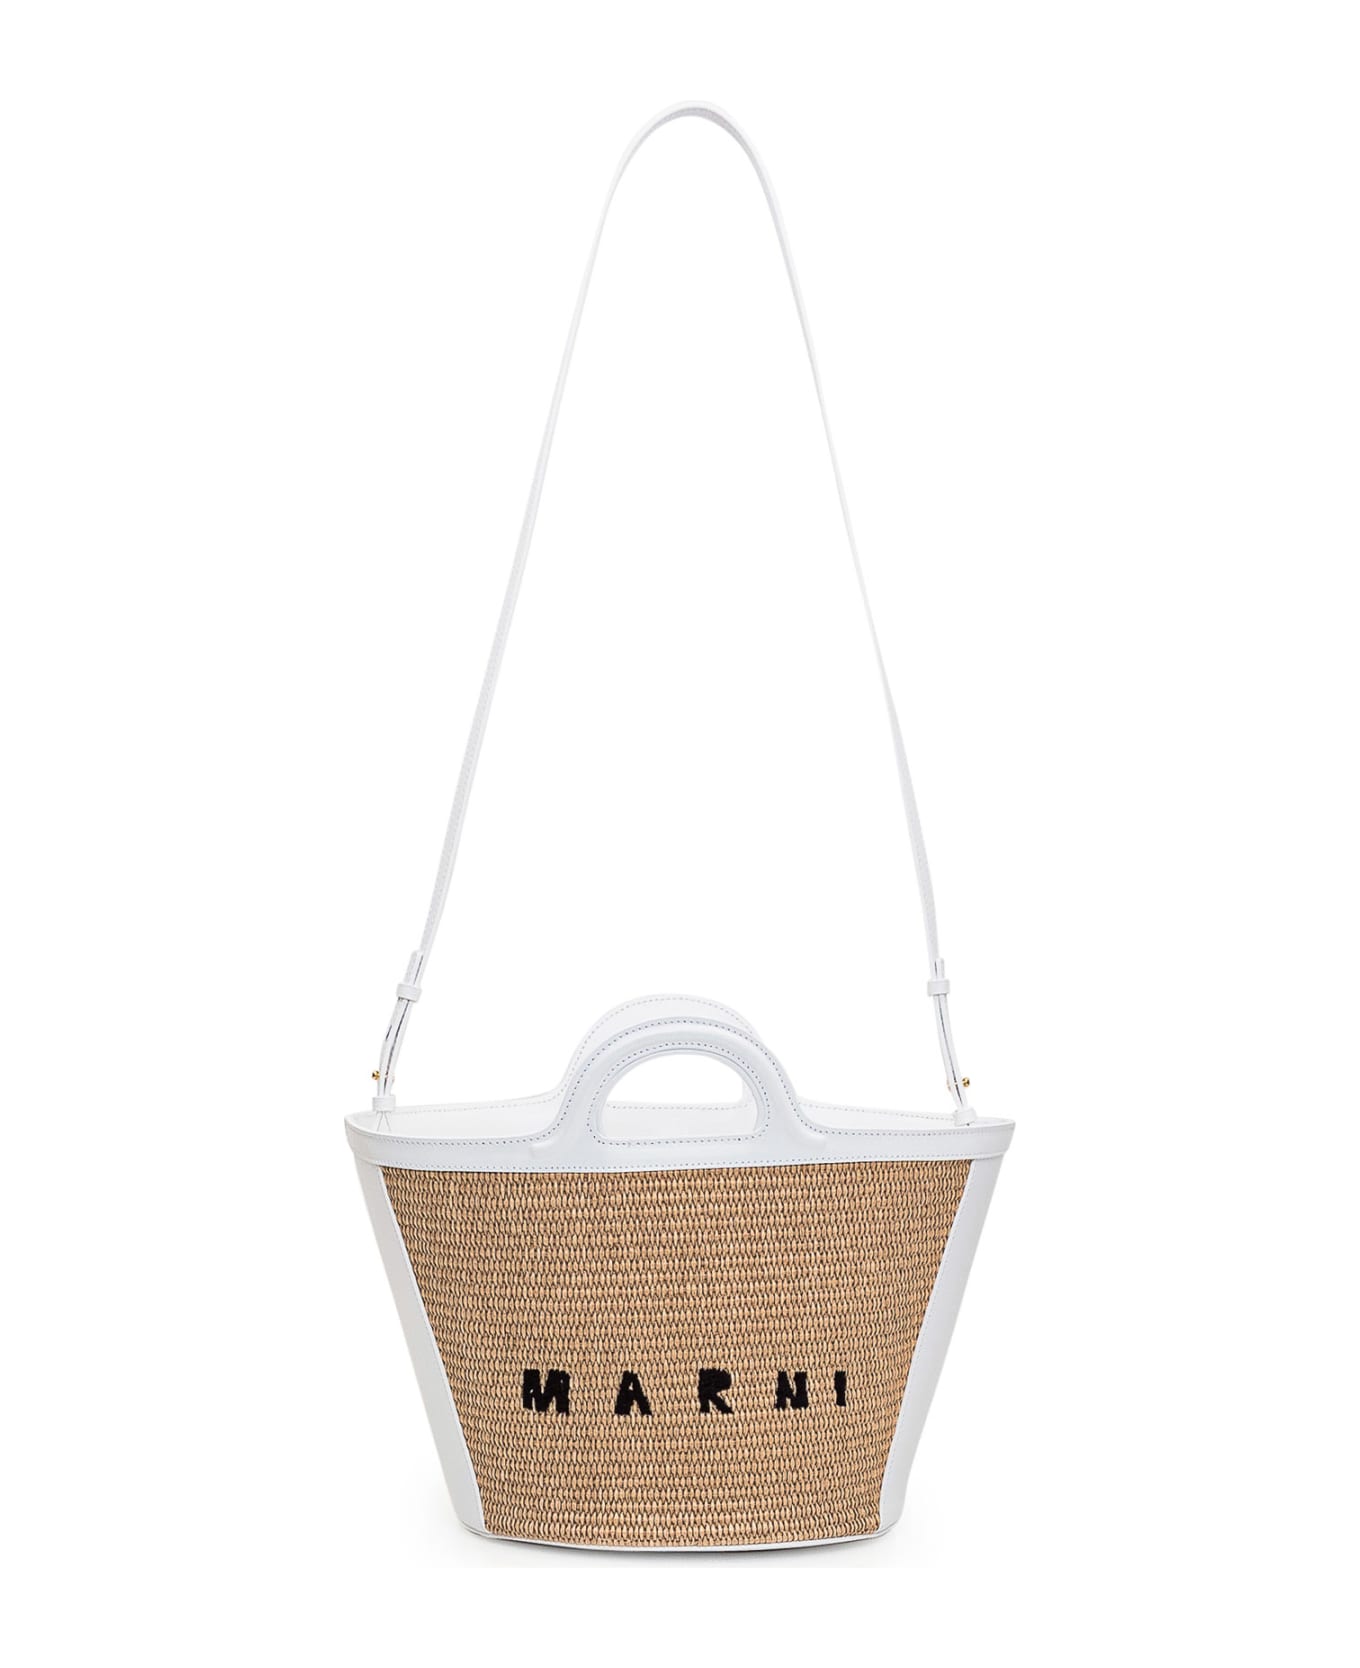 Marni Tropicalia Small Bag - SAND STORM/LILY WHITE